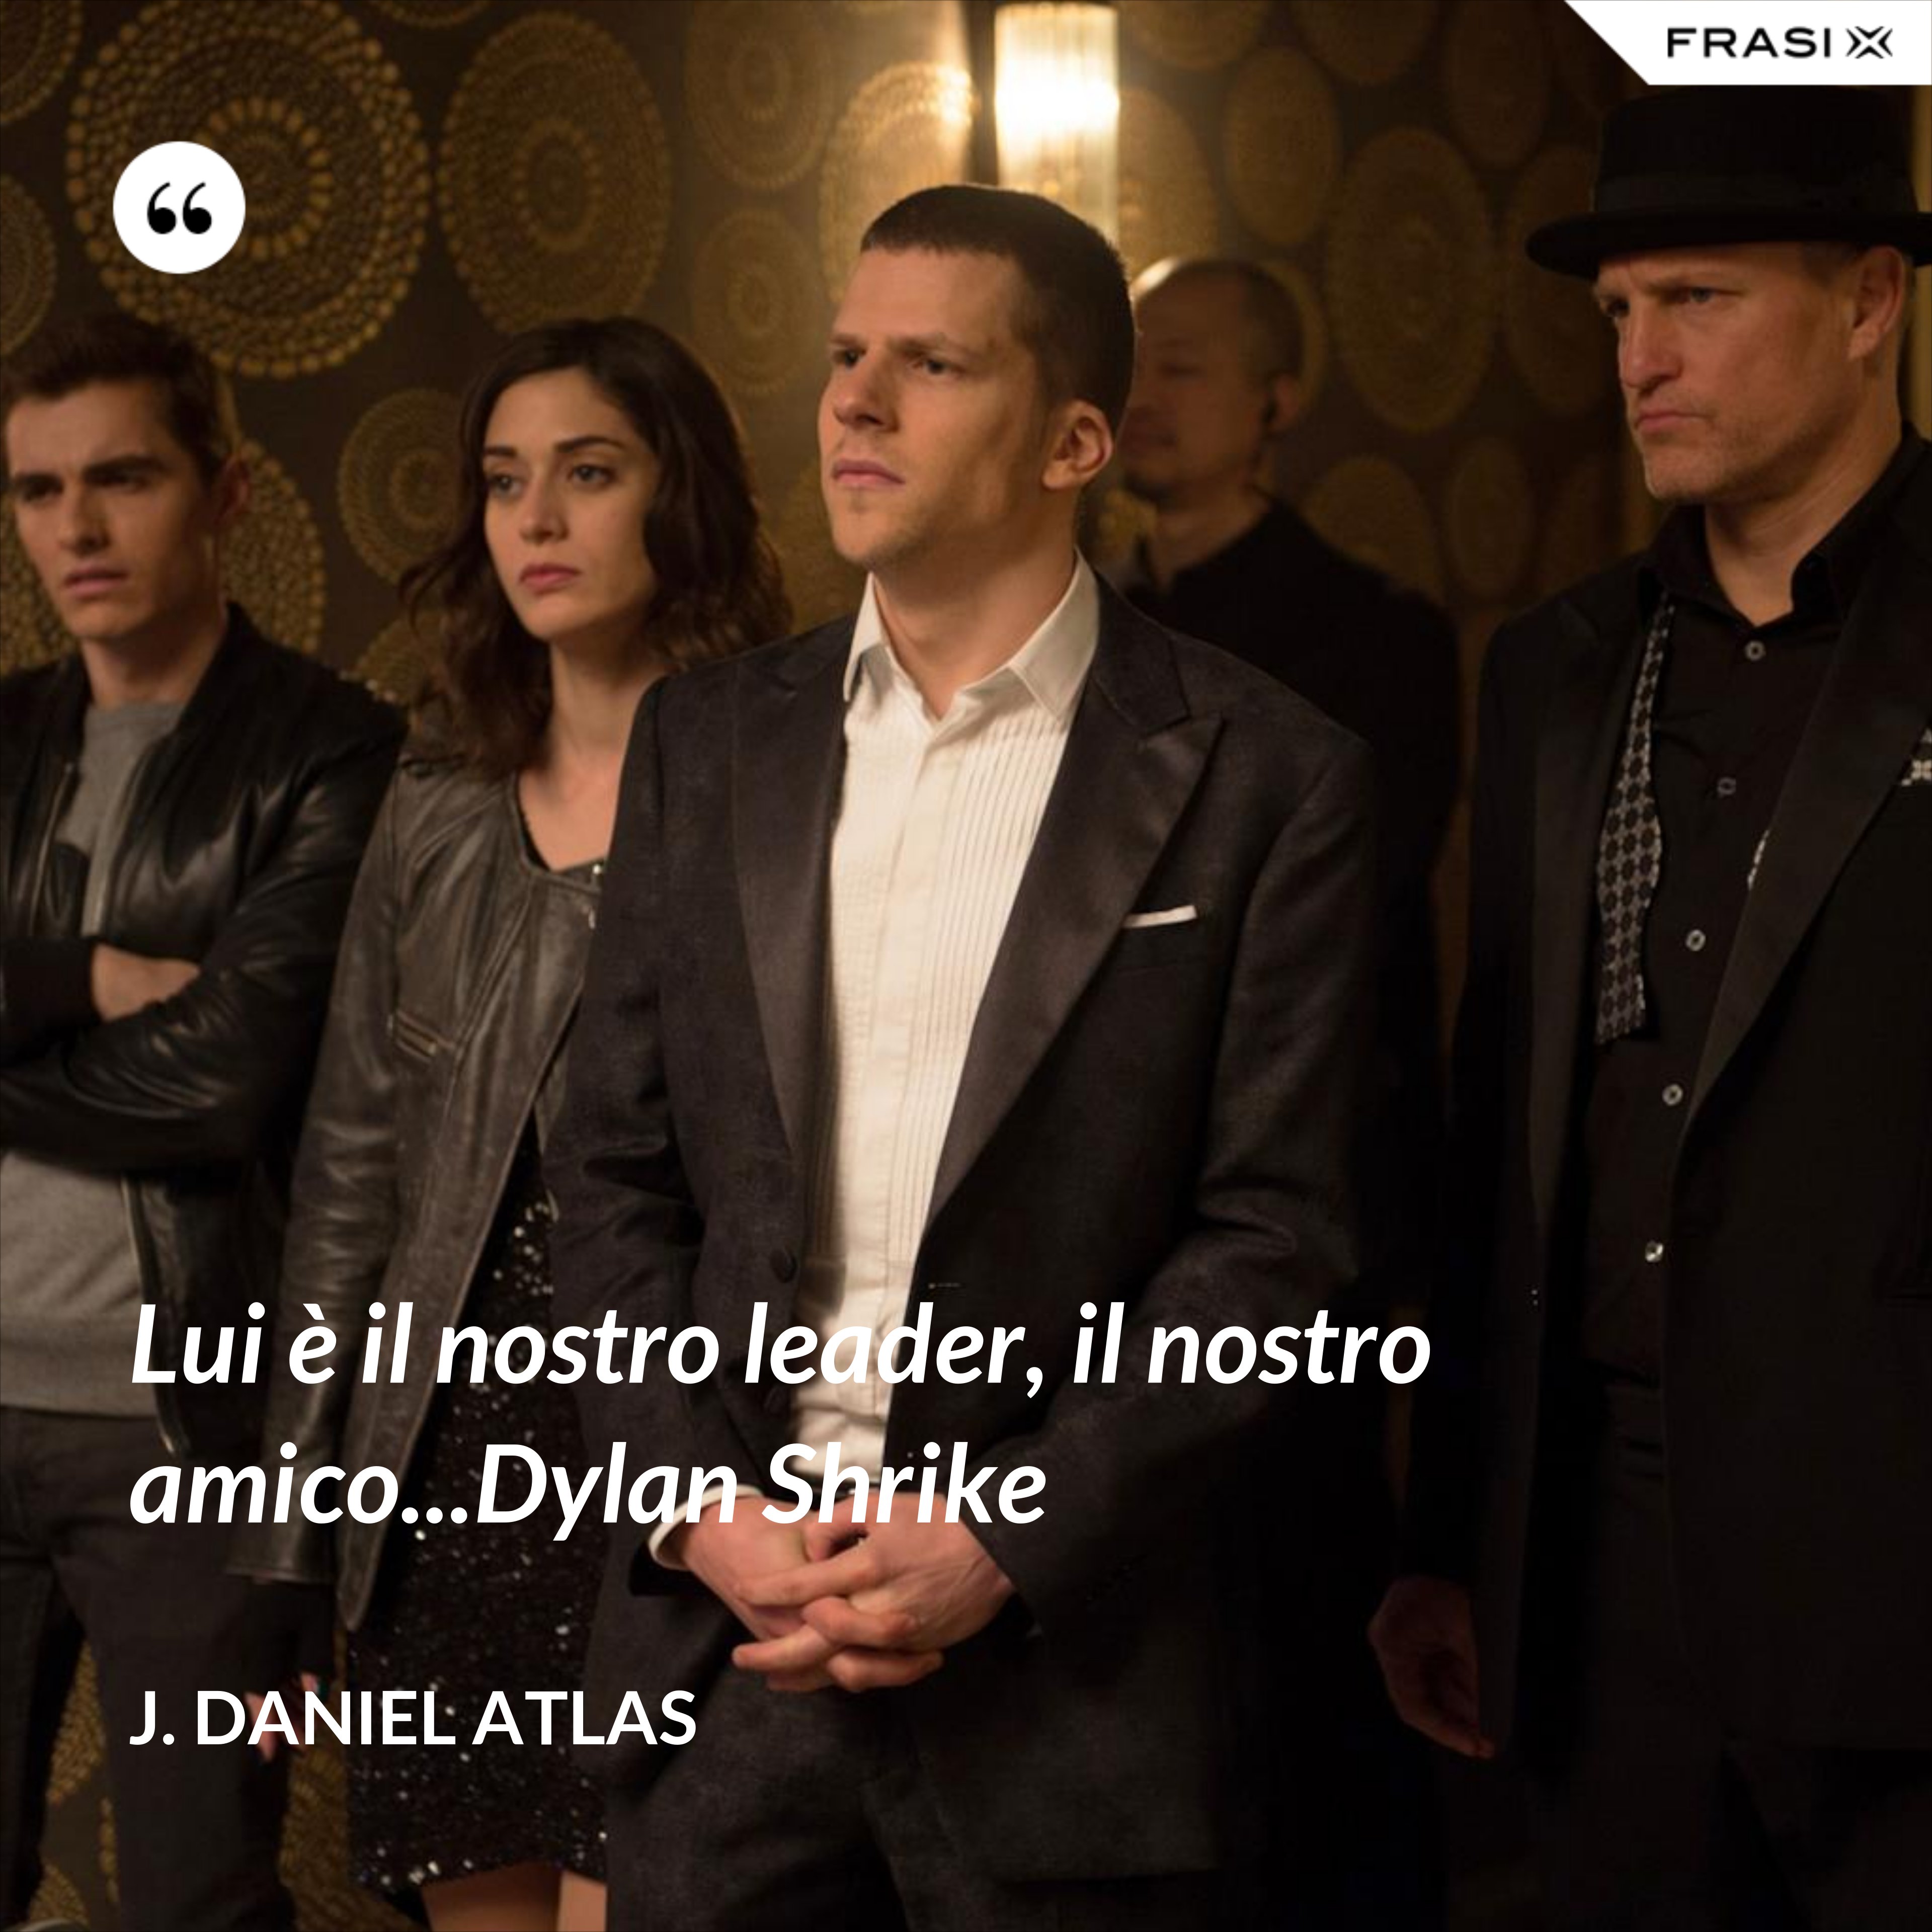 Lui è il nostro leader, il nostro amico...Dylan Shrike - J. Daniel Atlas